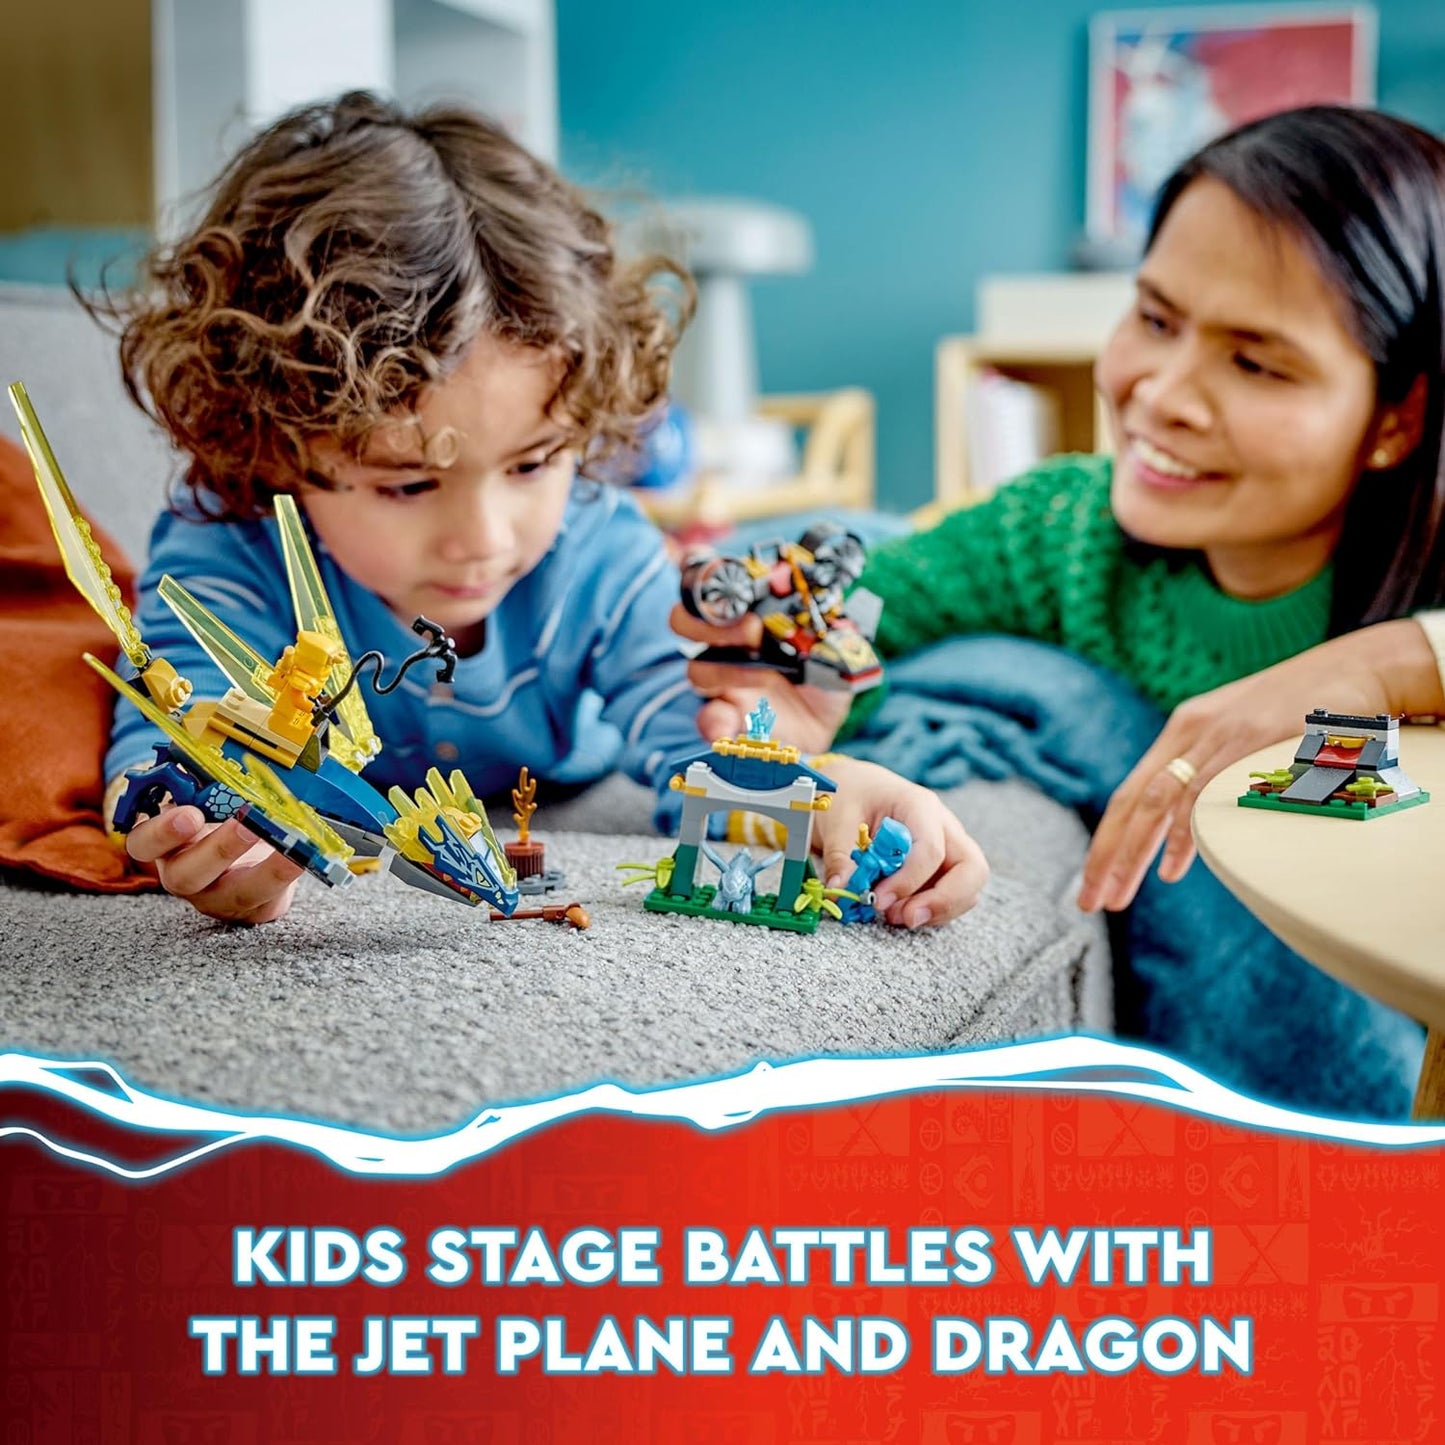 LEGO NINJAGO - NYA & Arin's Baby Dragon Battle 71798